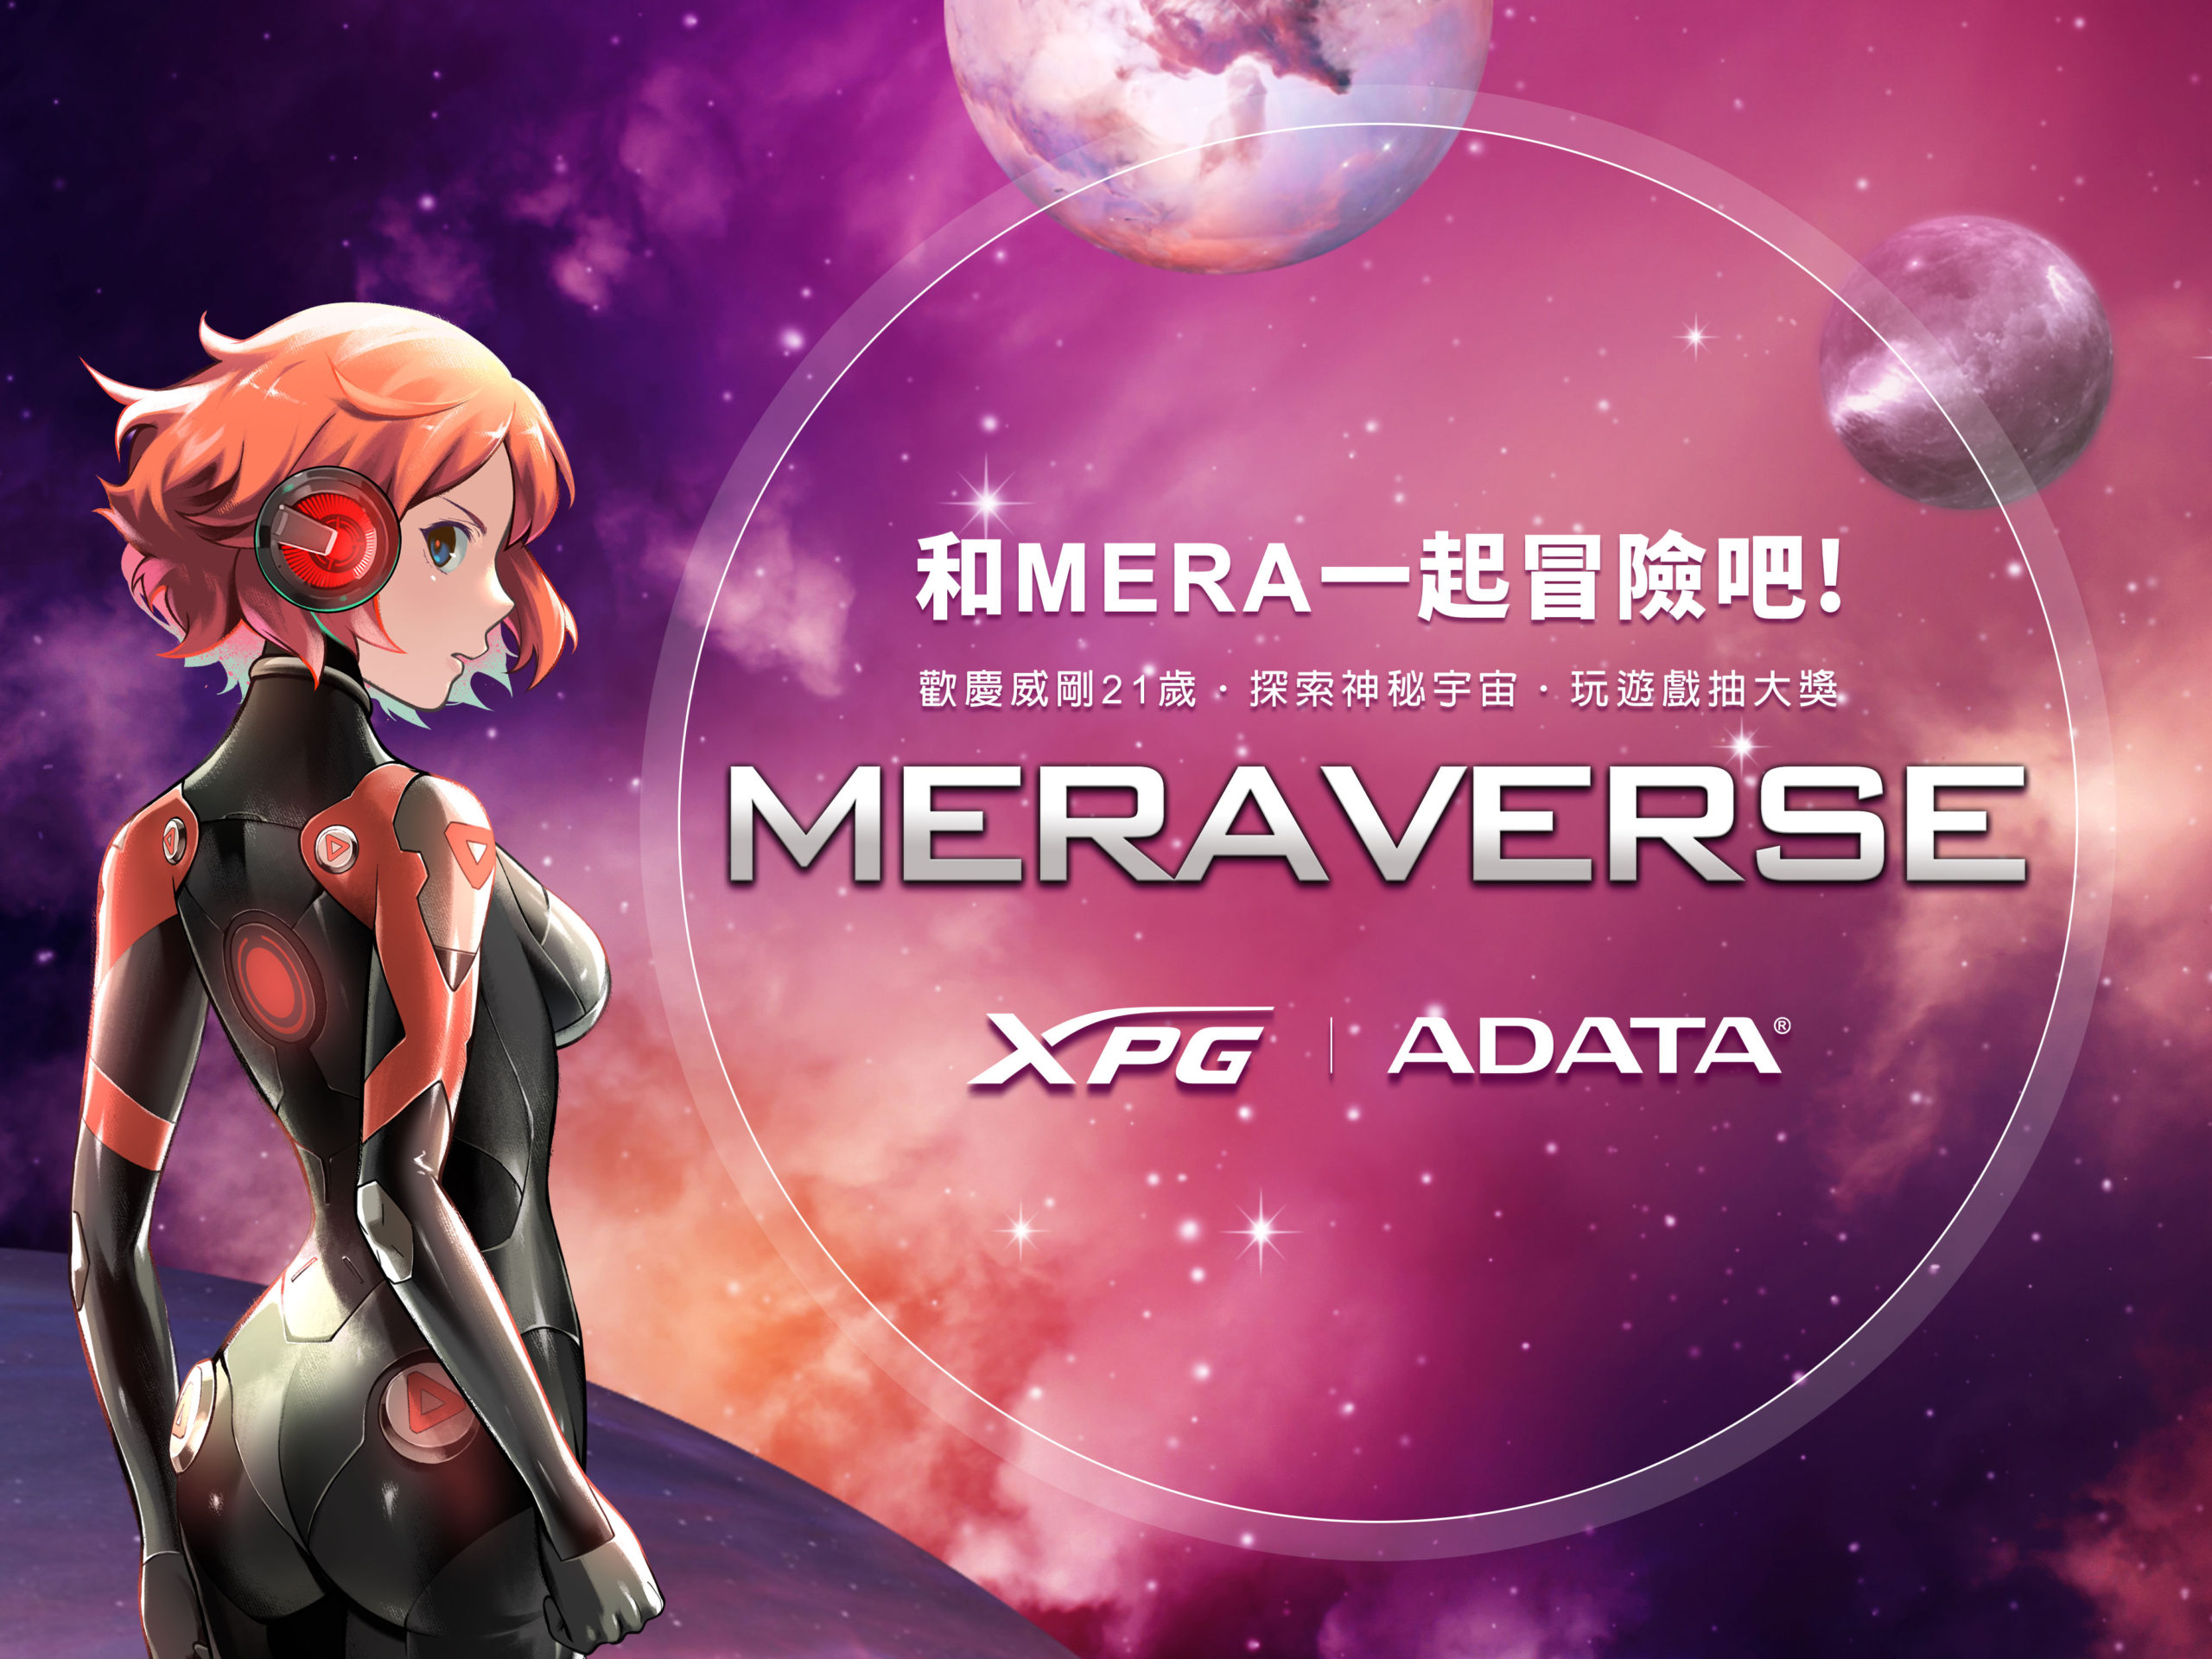 歡慶威剛科技21周年，邀您進入MERAVERSE感受威剛元宇宙 3